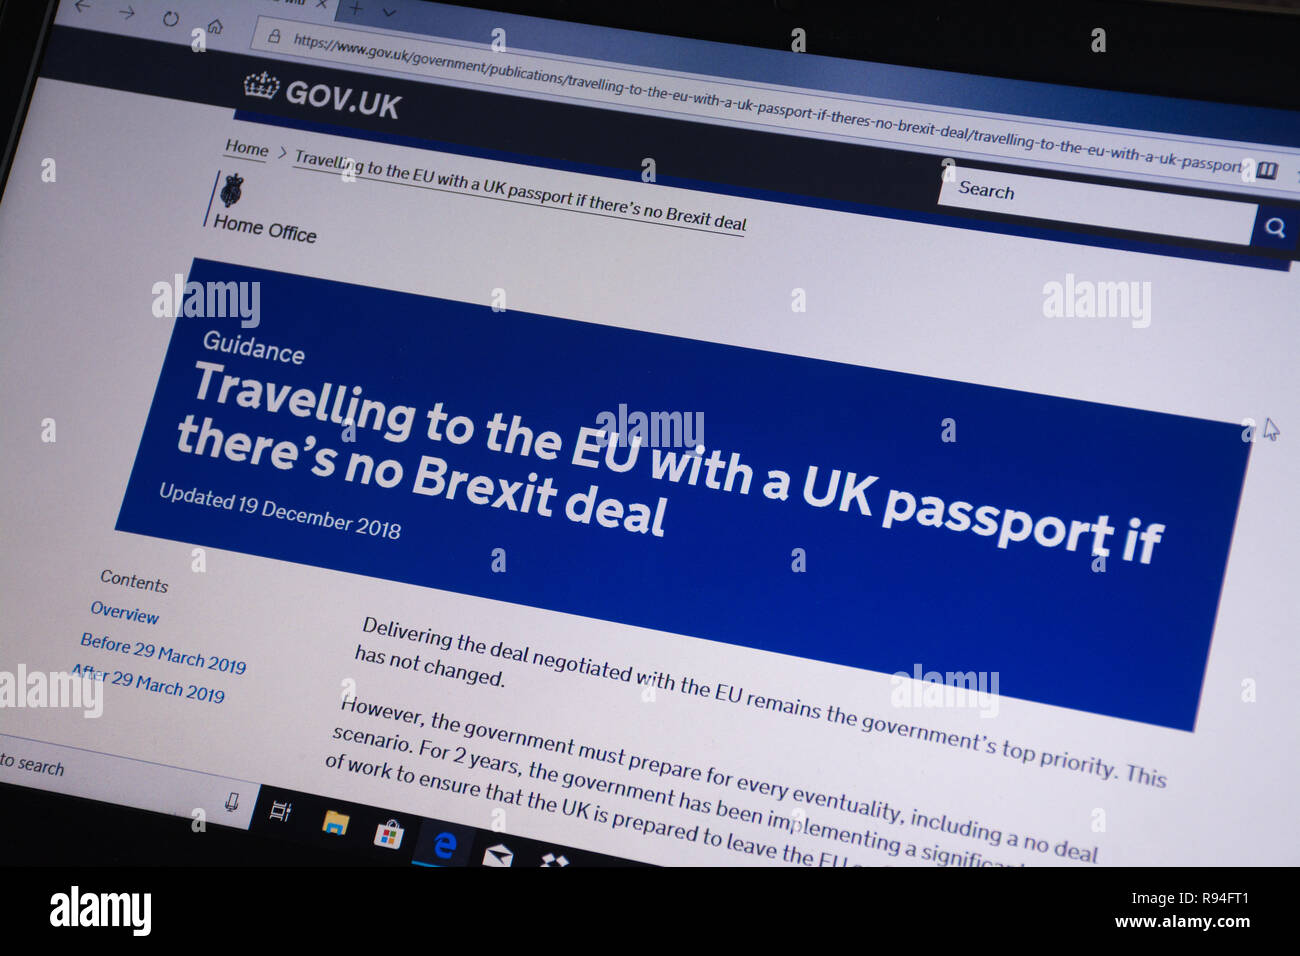 Capture d'écran de l'ordinateur de la gov.uk site montrant des conseils sur les voyages vers l'UE avec un passeport britannique s'il n'y a pas beaucoup Brexit Banque D'Images